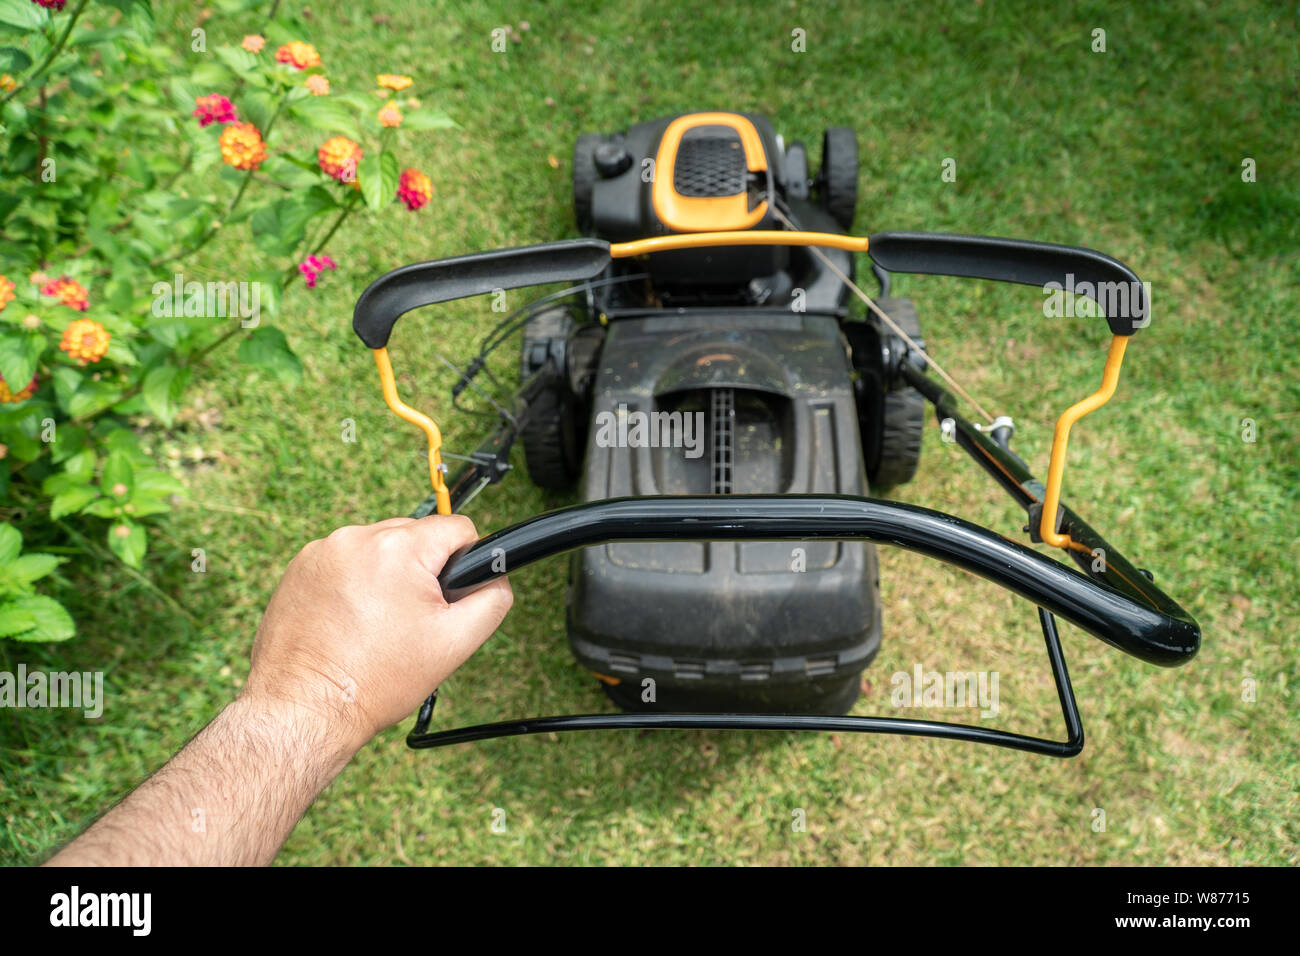 Mann hand mit einem Rasenmäher Maschine zum Schneiden von Gras. Gartenarbeit Konzept Stockfoto